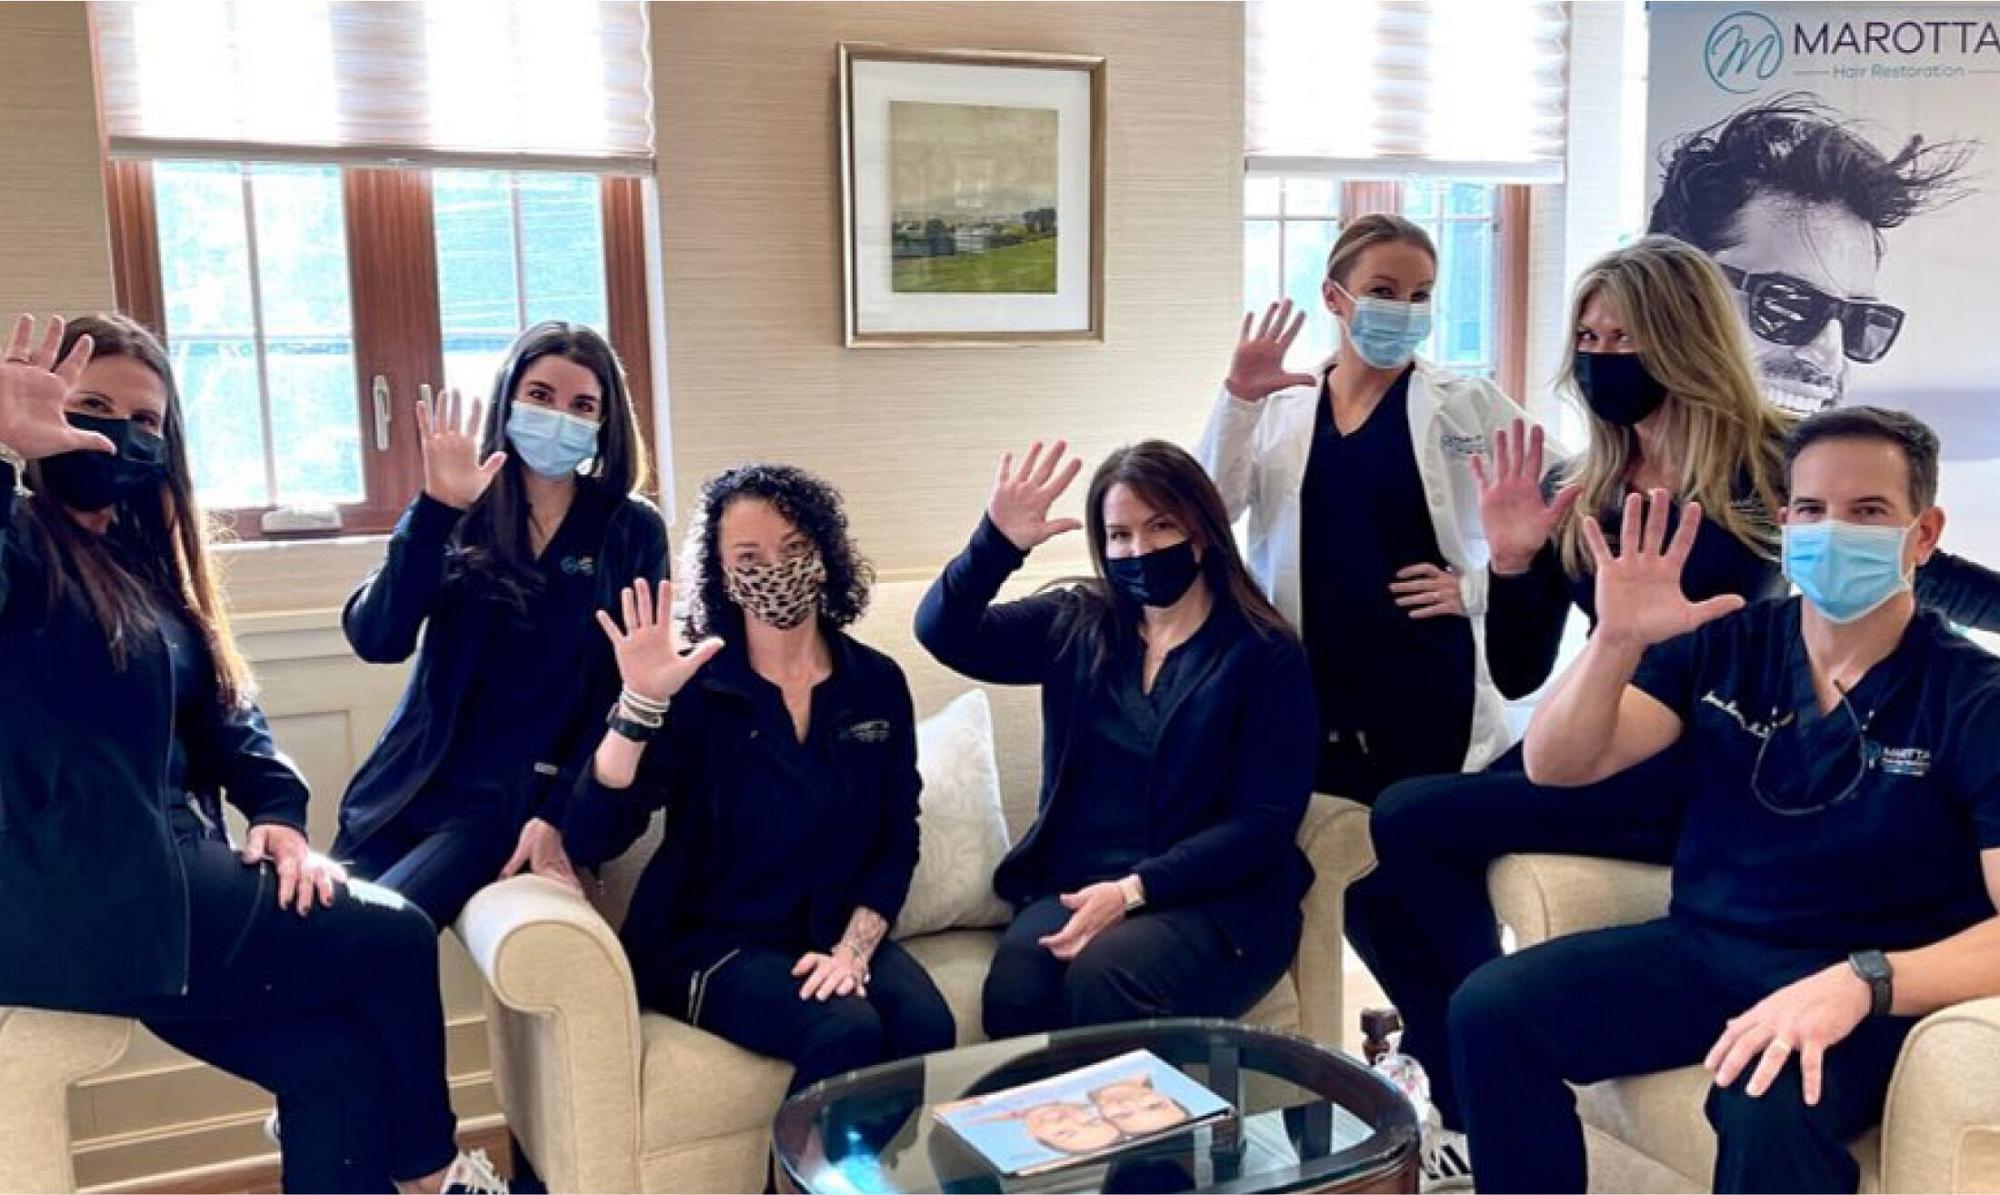 Long Island Plastic Surgery staff wearing masks